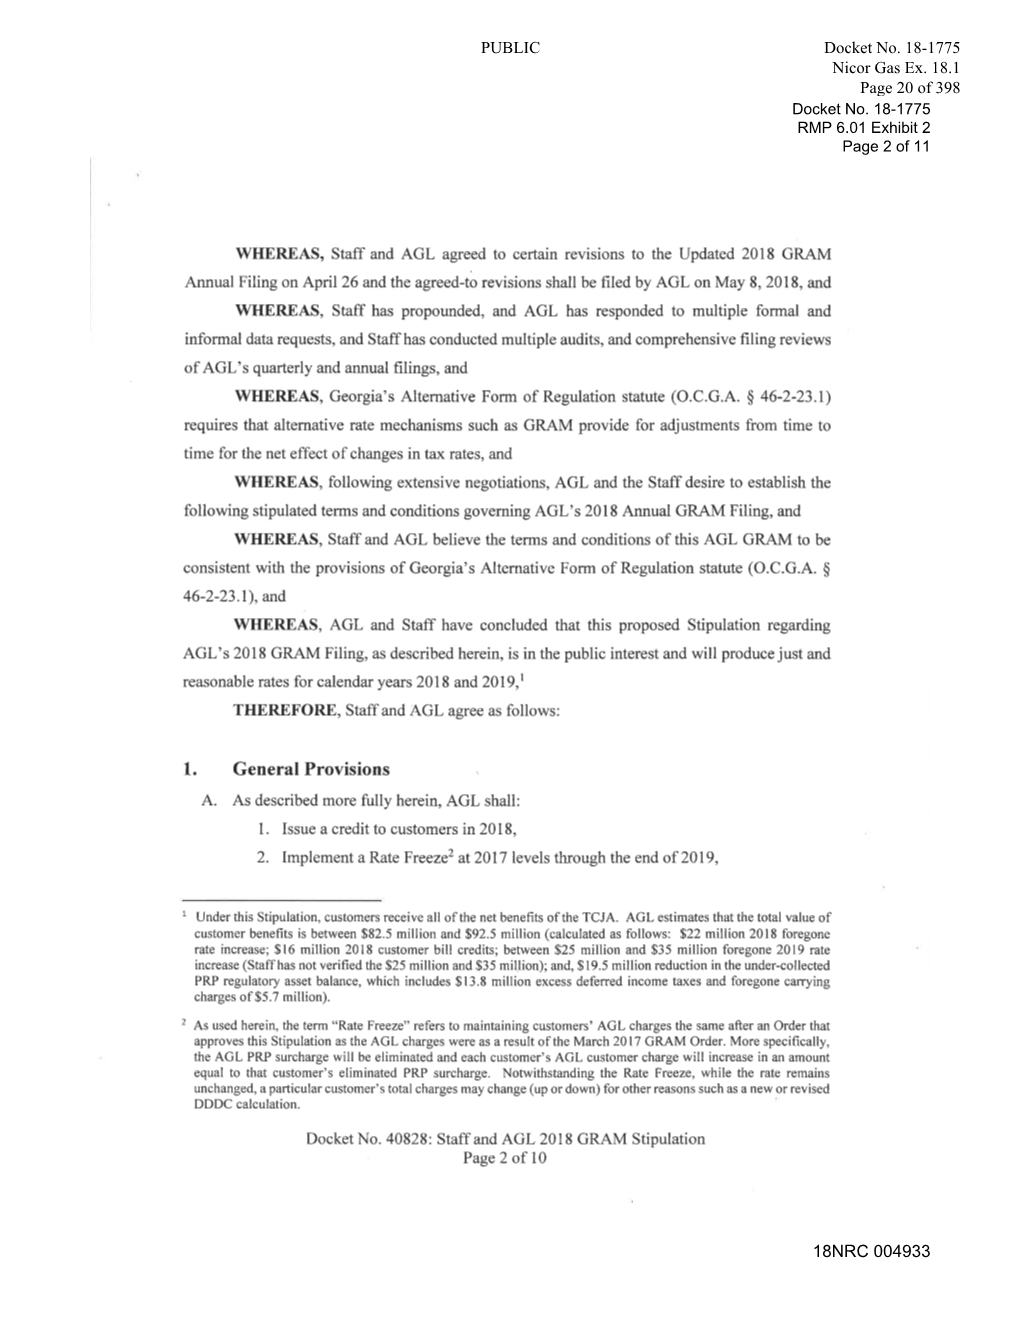 18NRC 004933 PUBLIC Docket No. 18-1775 Nicor Gas Ex. 18.1 Page 20 Of